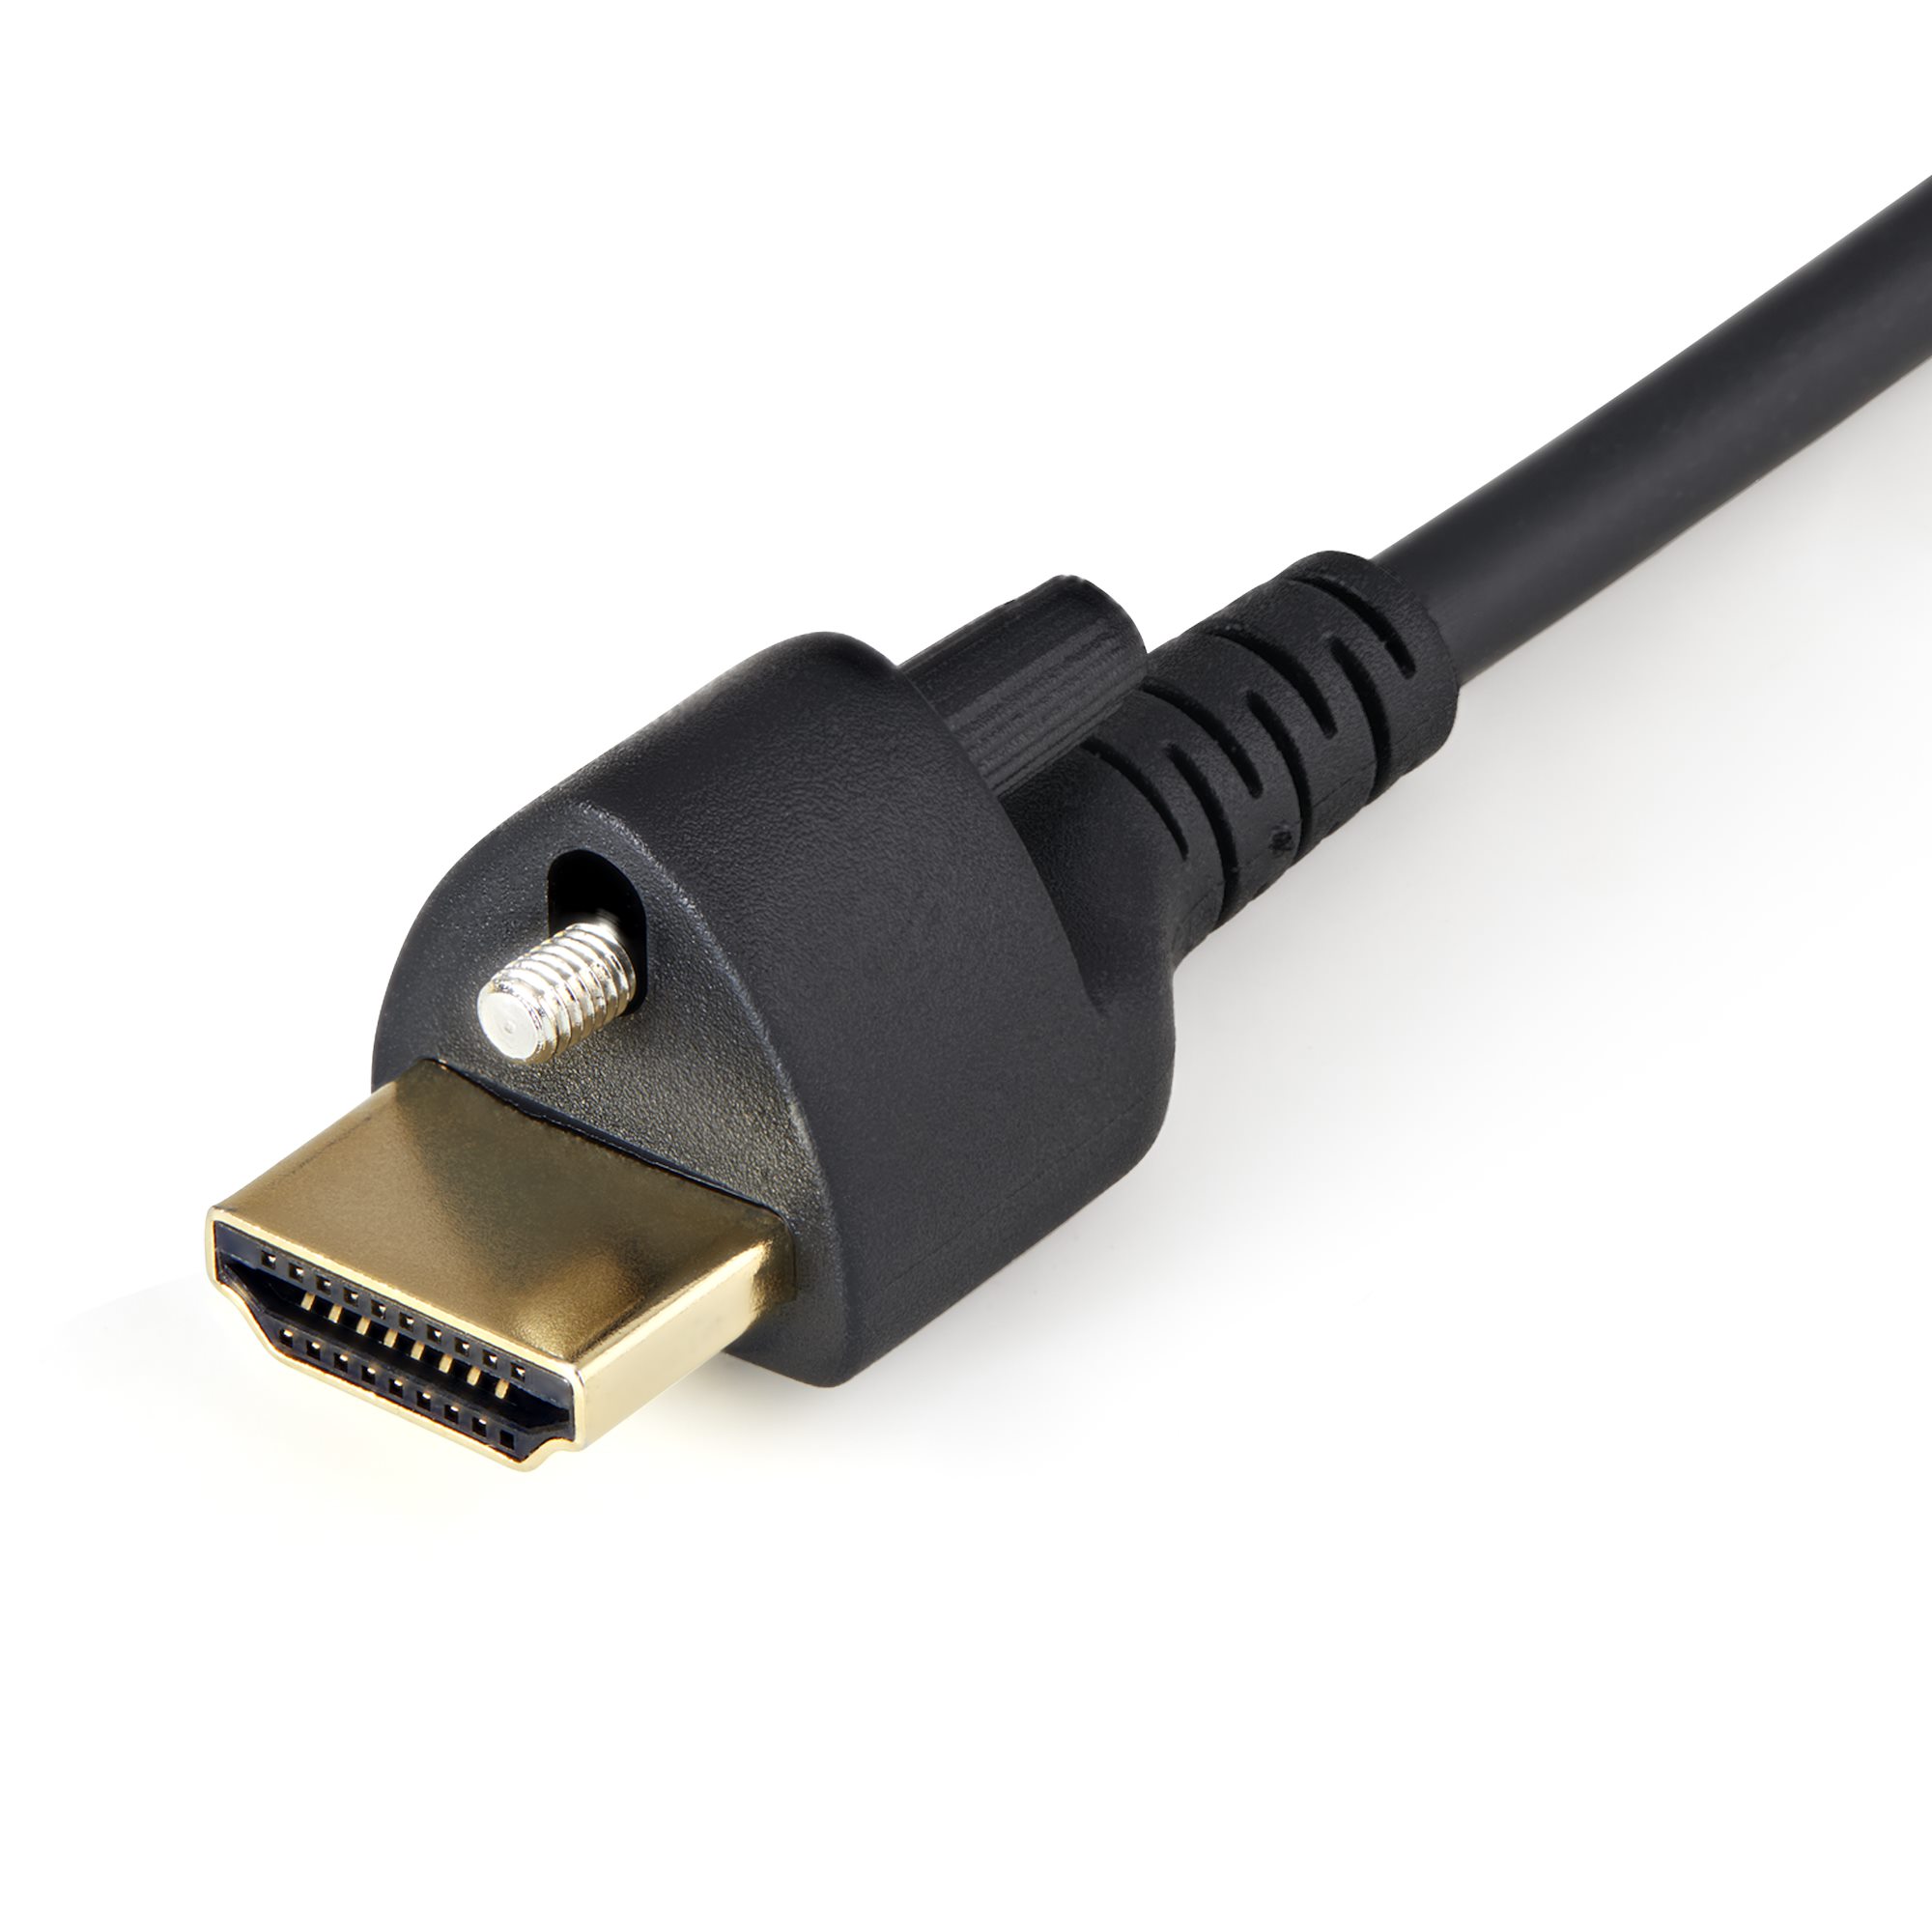 Cable HDMI 4K 60 Hz con Ethernet de StarTech.com - Premium - 1 m